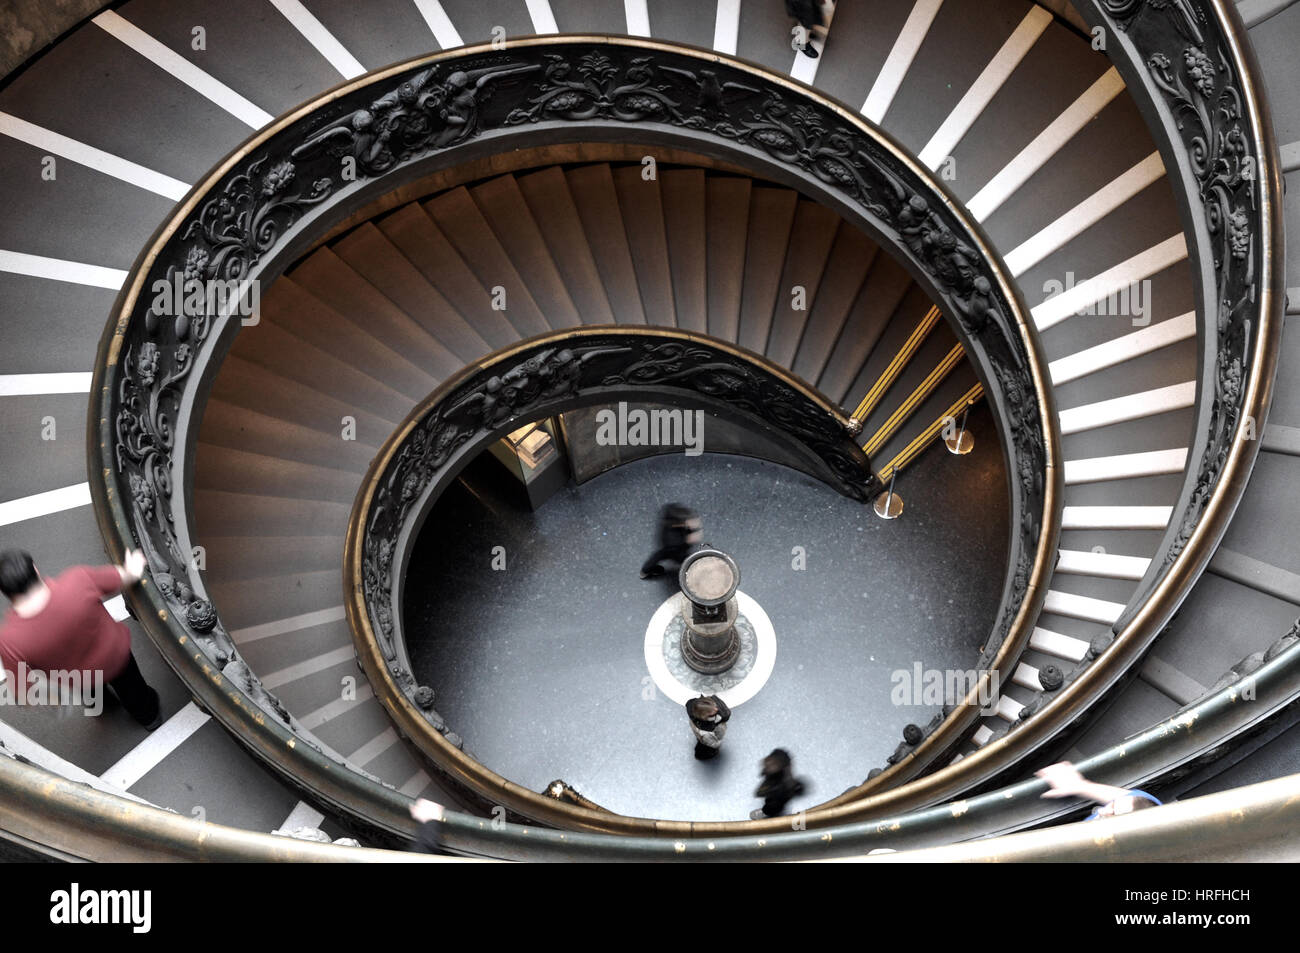 Ciudad del Vaticano, CIUDAD DEL VATICANO - Marzo 15, 2016: la gente descender la escalera de doble hélice moderno diseñado por Giuseppe Momo en 1932, de los Museos Vaticanos. Foto de stock